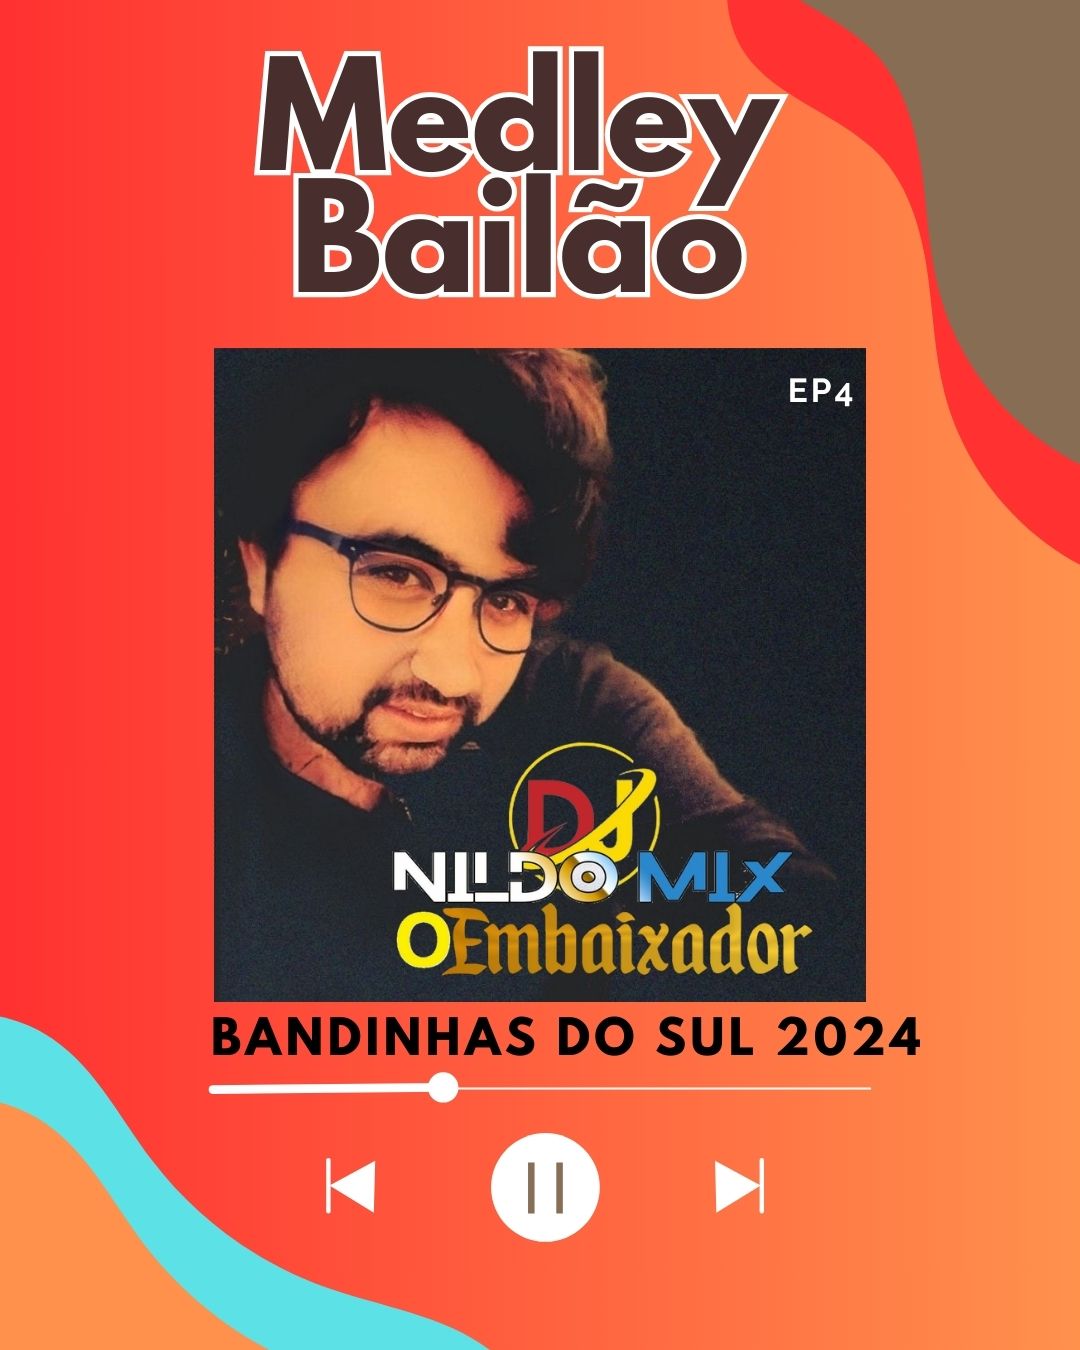 Medley Bailão DJ NILDO MIX O EMBAIXADOR BANDINHAS DO SUL 2024 Ep4